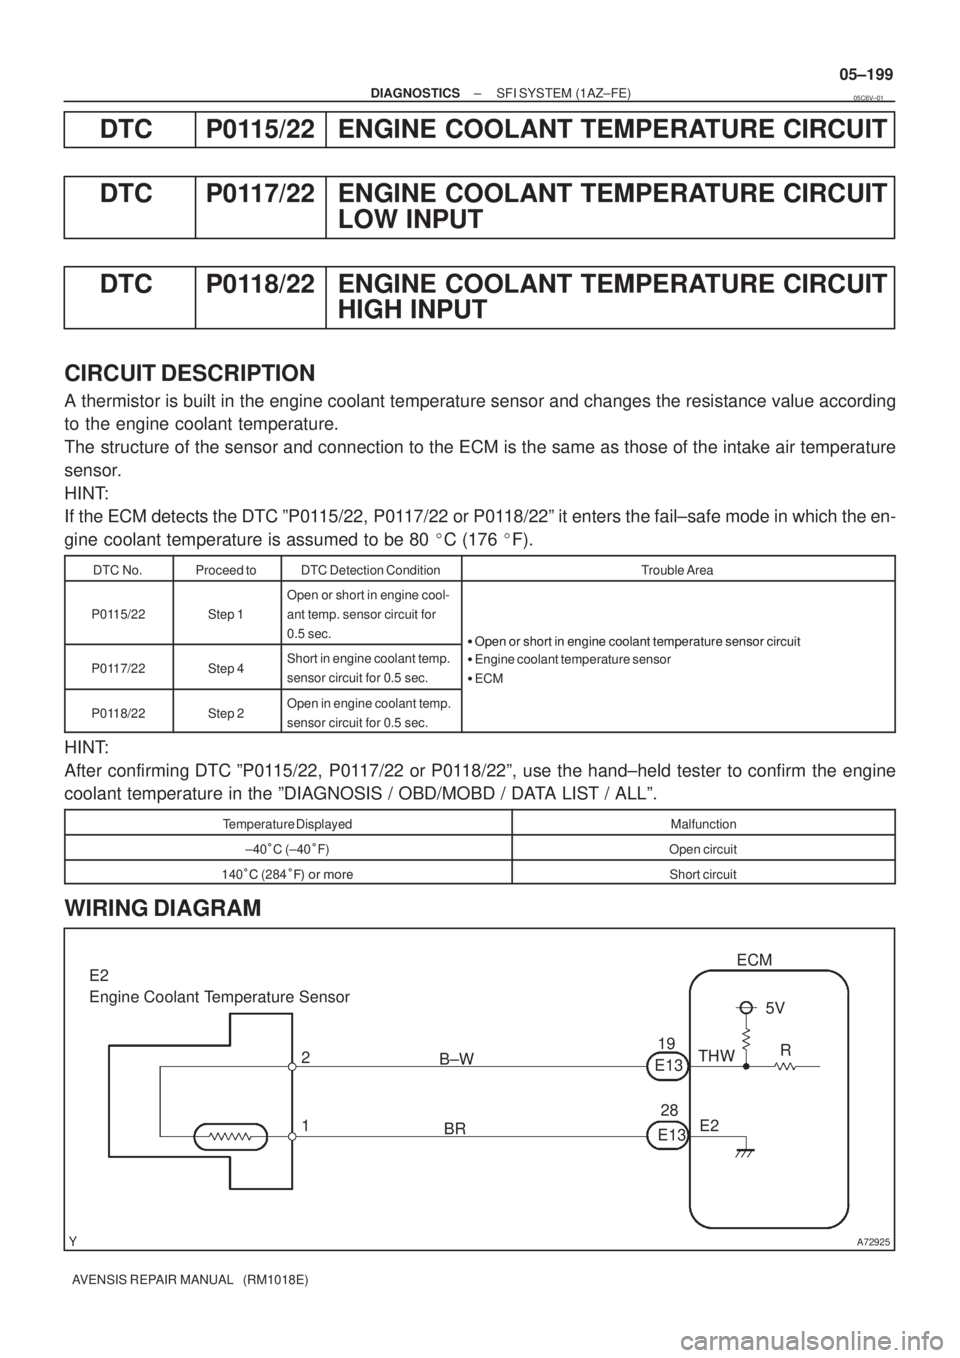 TOYOTA AVENSIS 2005  Service Repair Manual A72925
ECM
THW
E2 19
E13
28
E13 BR B±W
1 25V
R E2
Engine Coolant Temperature Sensor
± DIAGNOSTICSSFI SYSTEM (1AZ±FE)
05±199
AVENSIS REPAIR MANUAL   (RM1018E)
DTC P0115/22 ENGINE COOLANT TEMPERATUR